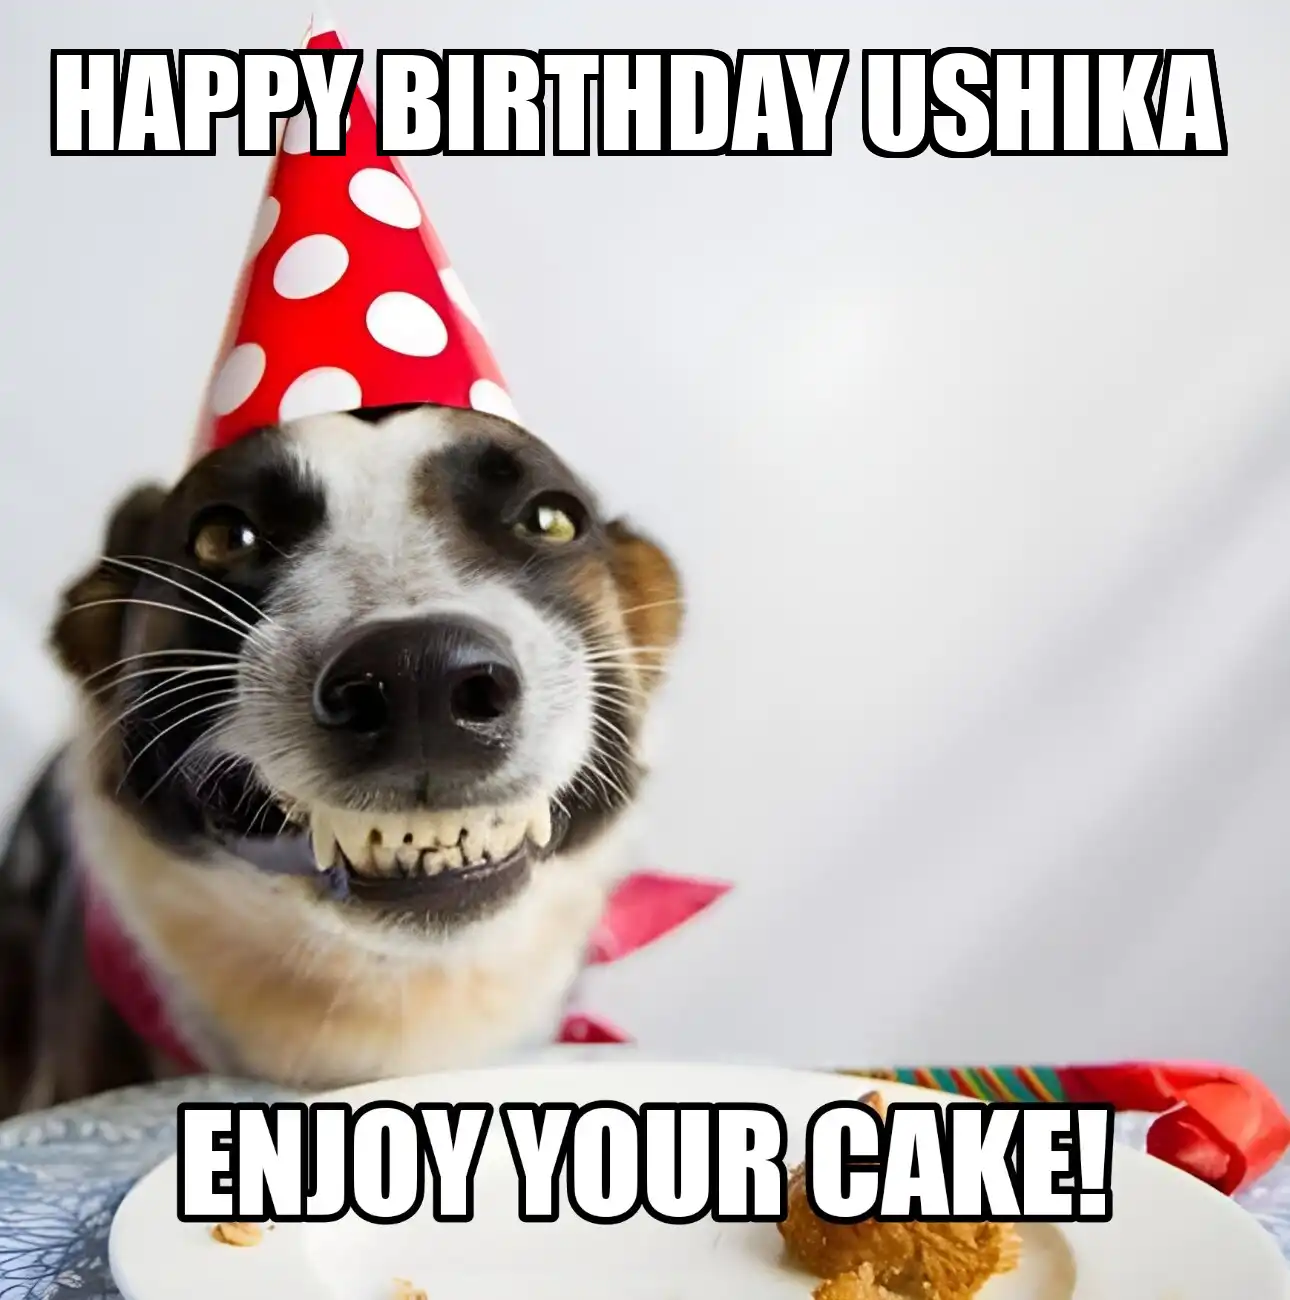 Happy Birthday Ushika Enjoy Your Cake Dog Meme